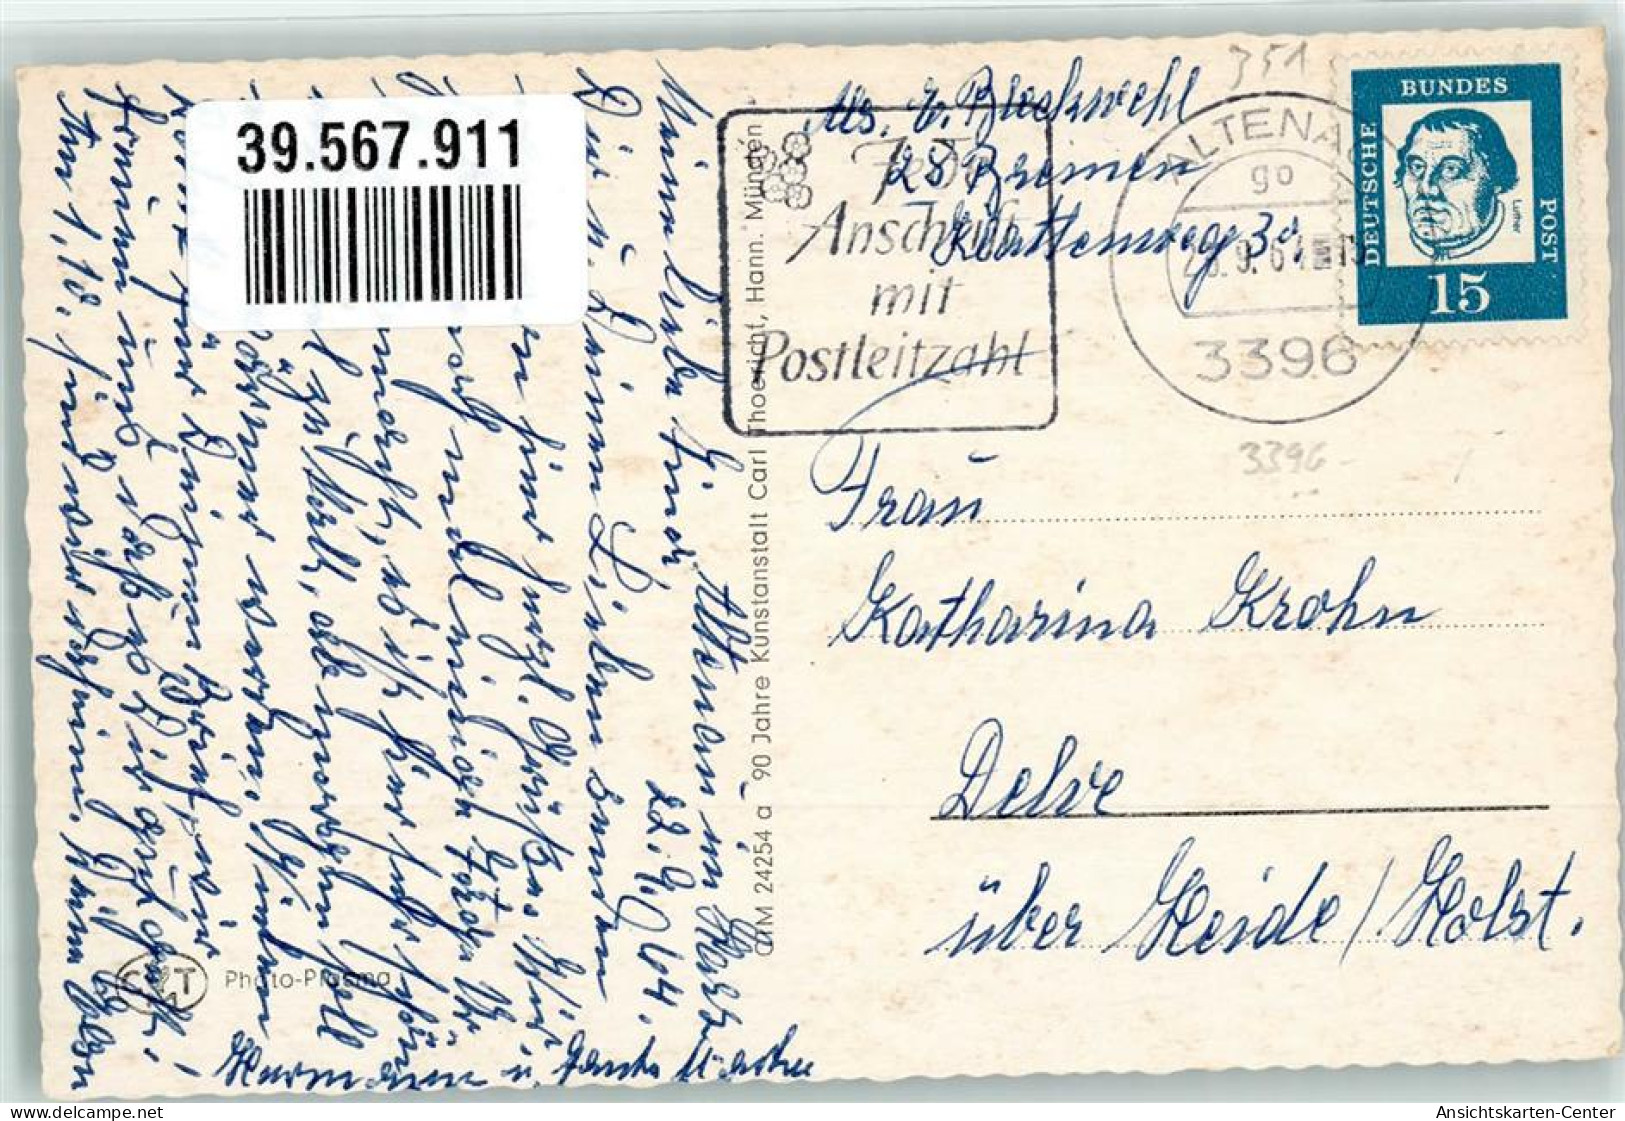 39567911 - Altenau , Harz - Altenau